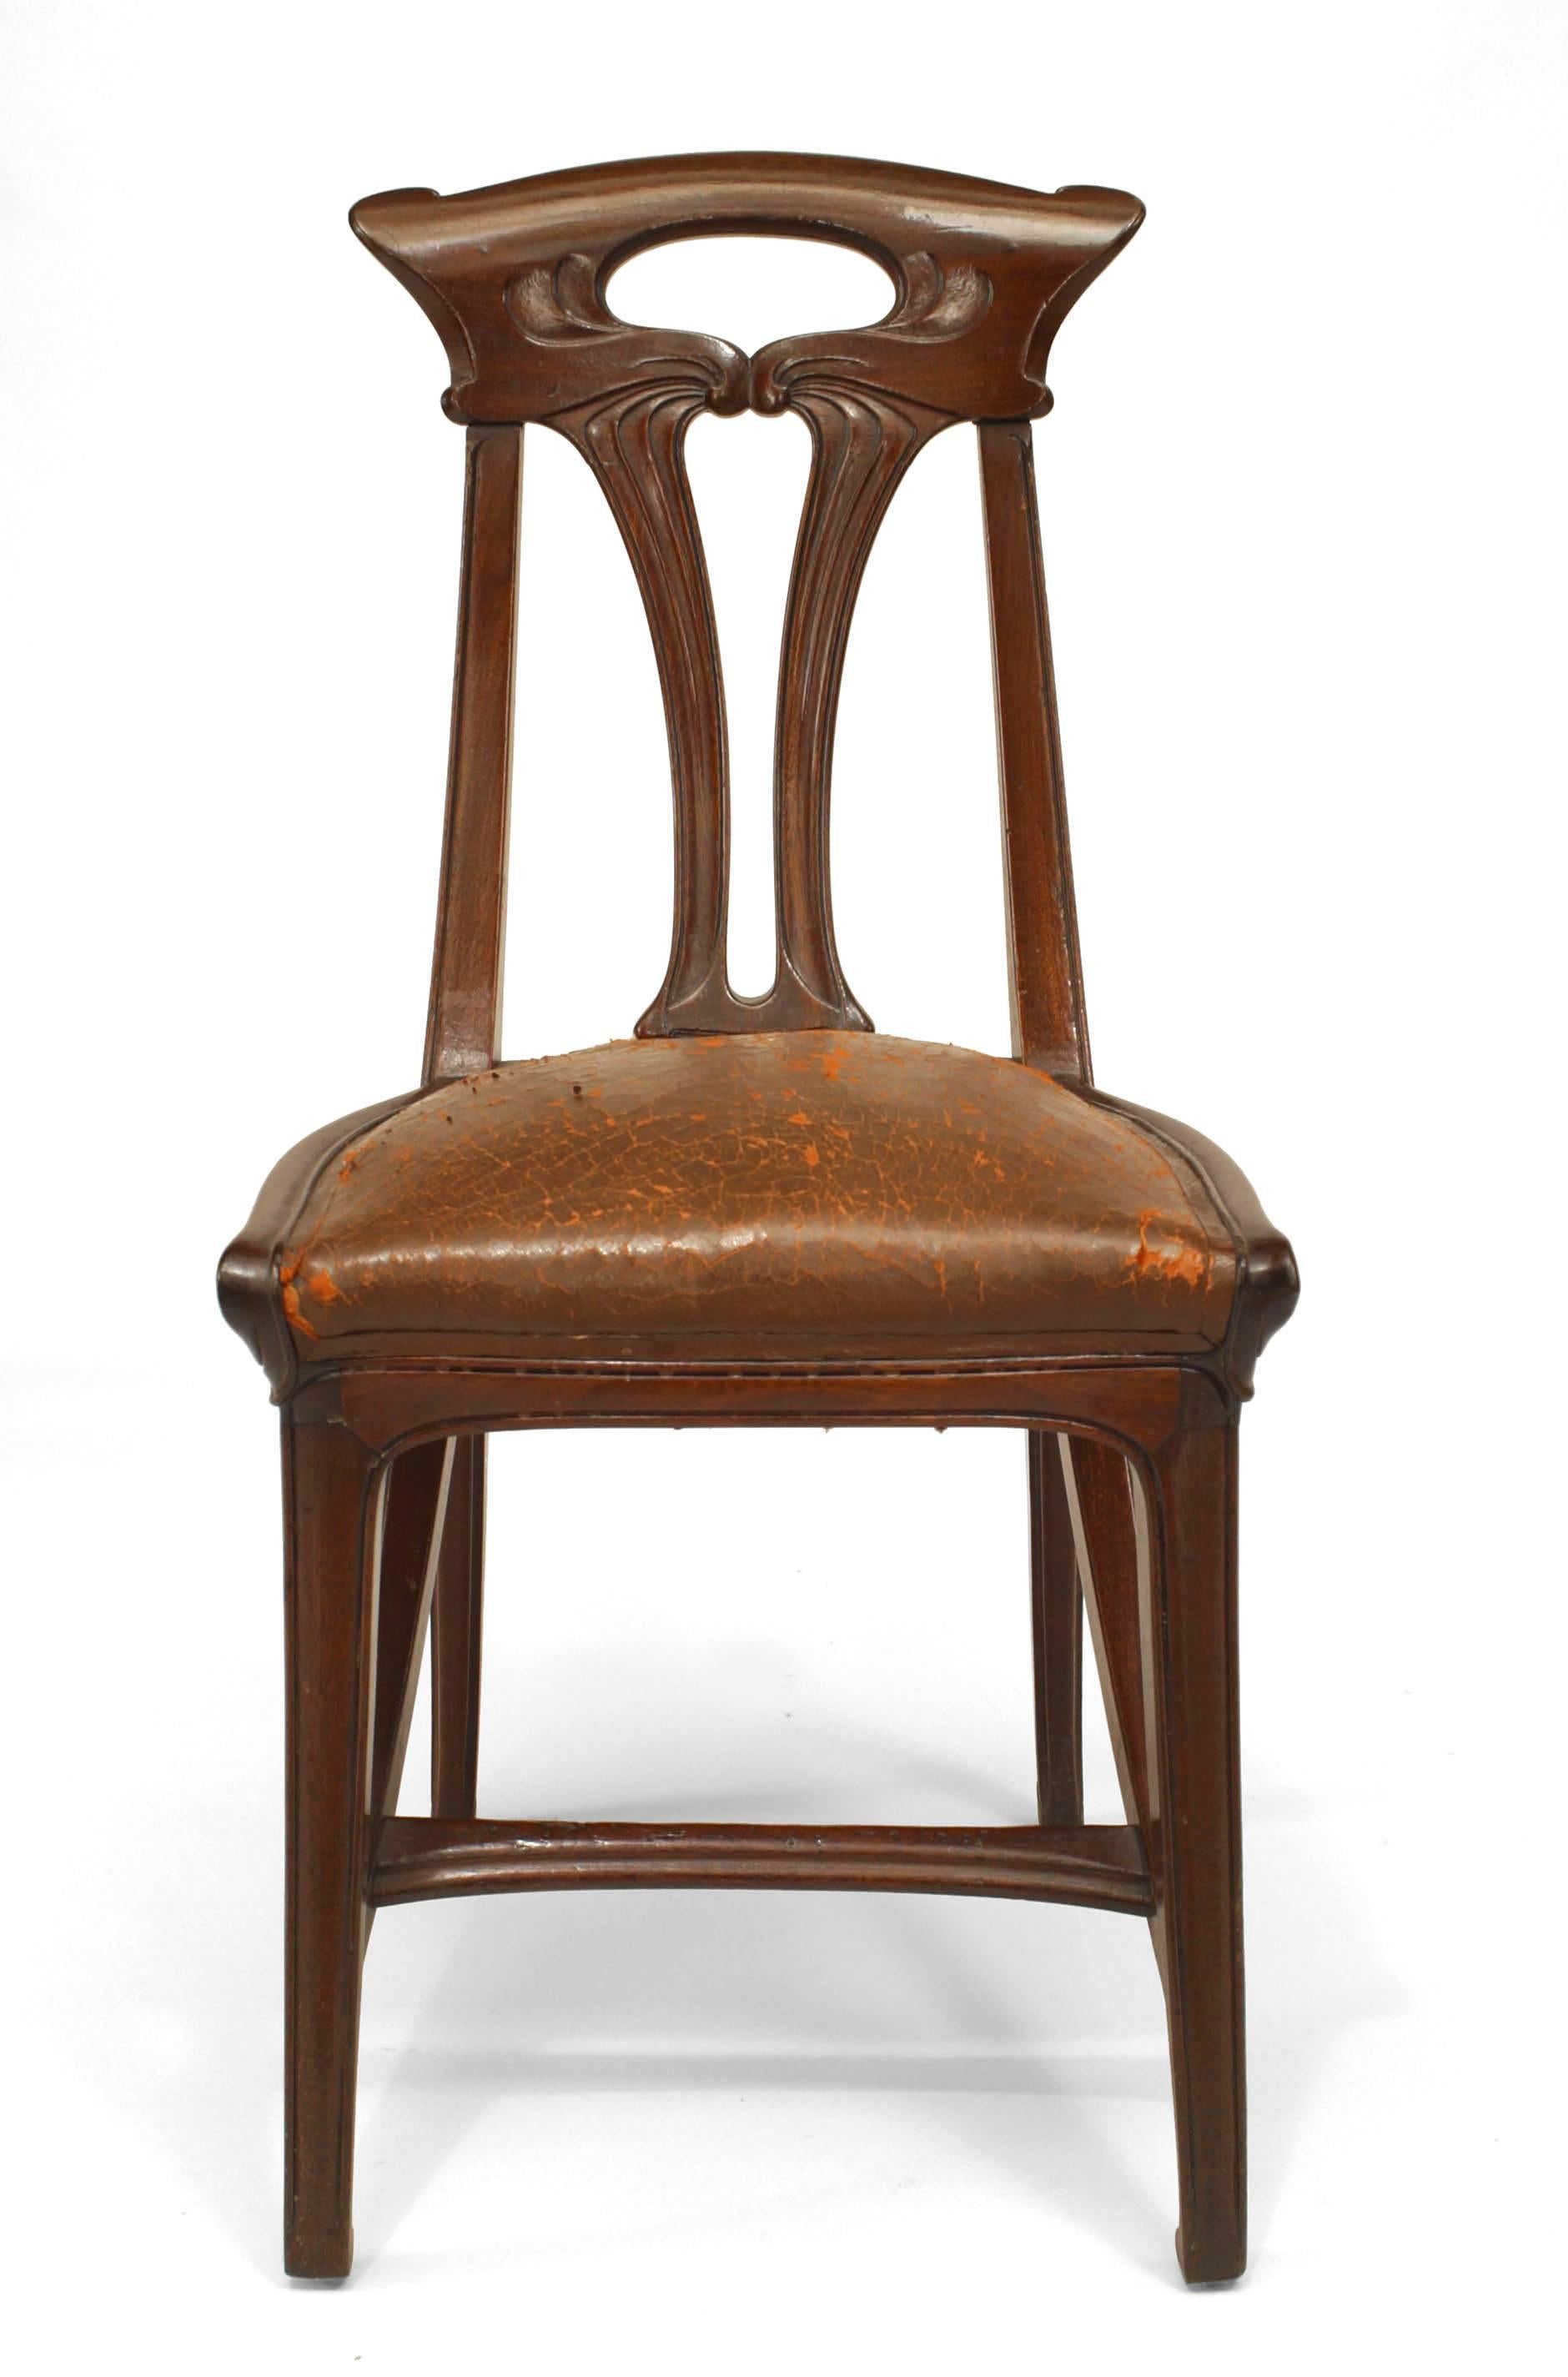 Paire de chaises latérales Art Nouveau en noyer avec dossier ouvert et assise en cuir brun (GAILLARD) (pg. 386, Collectors Encyclopedia of Antiques) (table assortie-Inv. #040557E)
